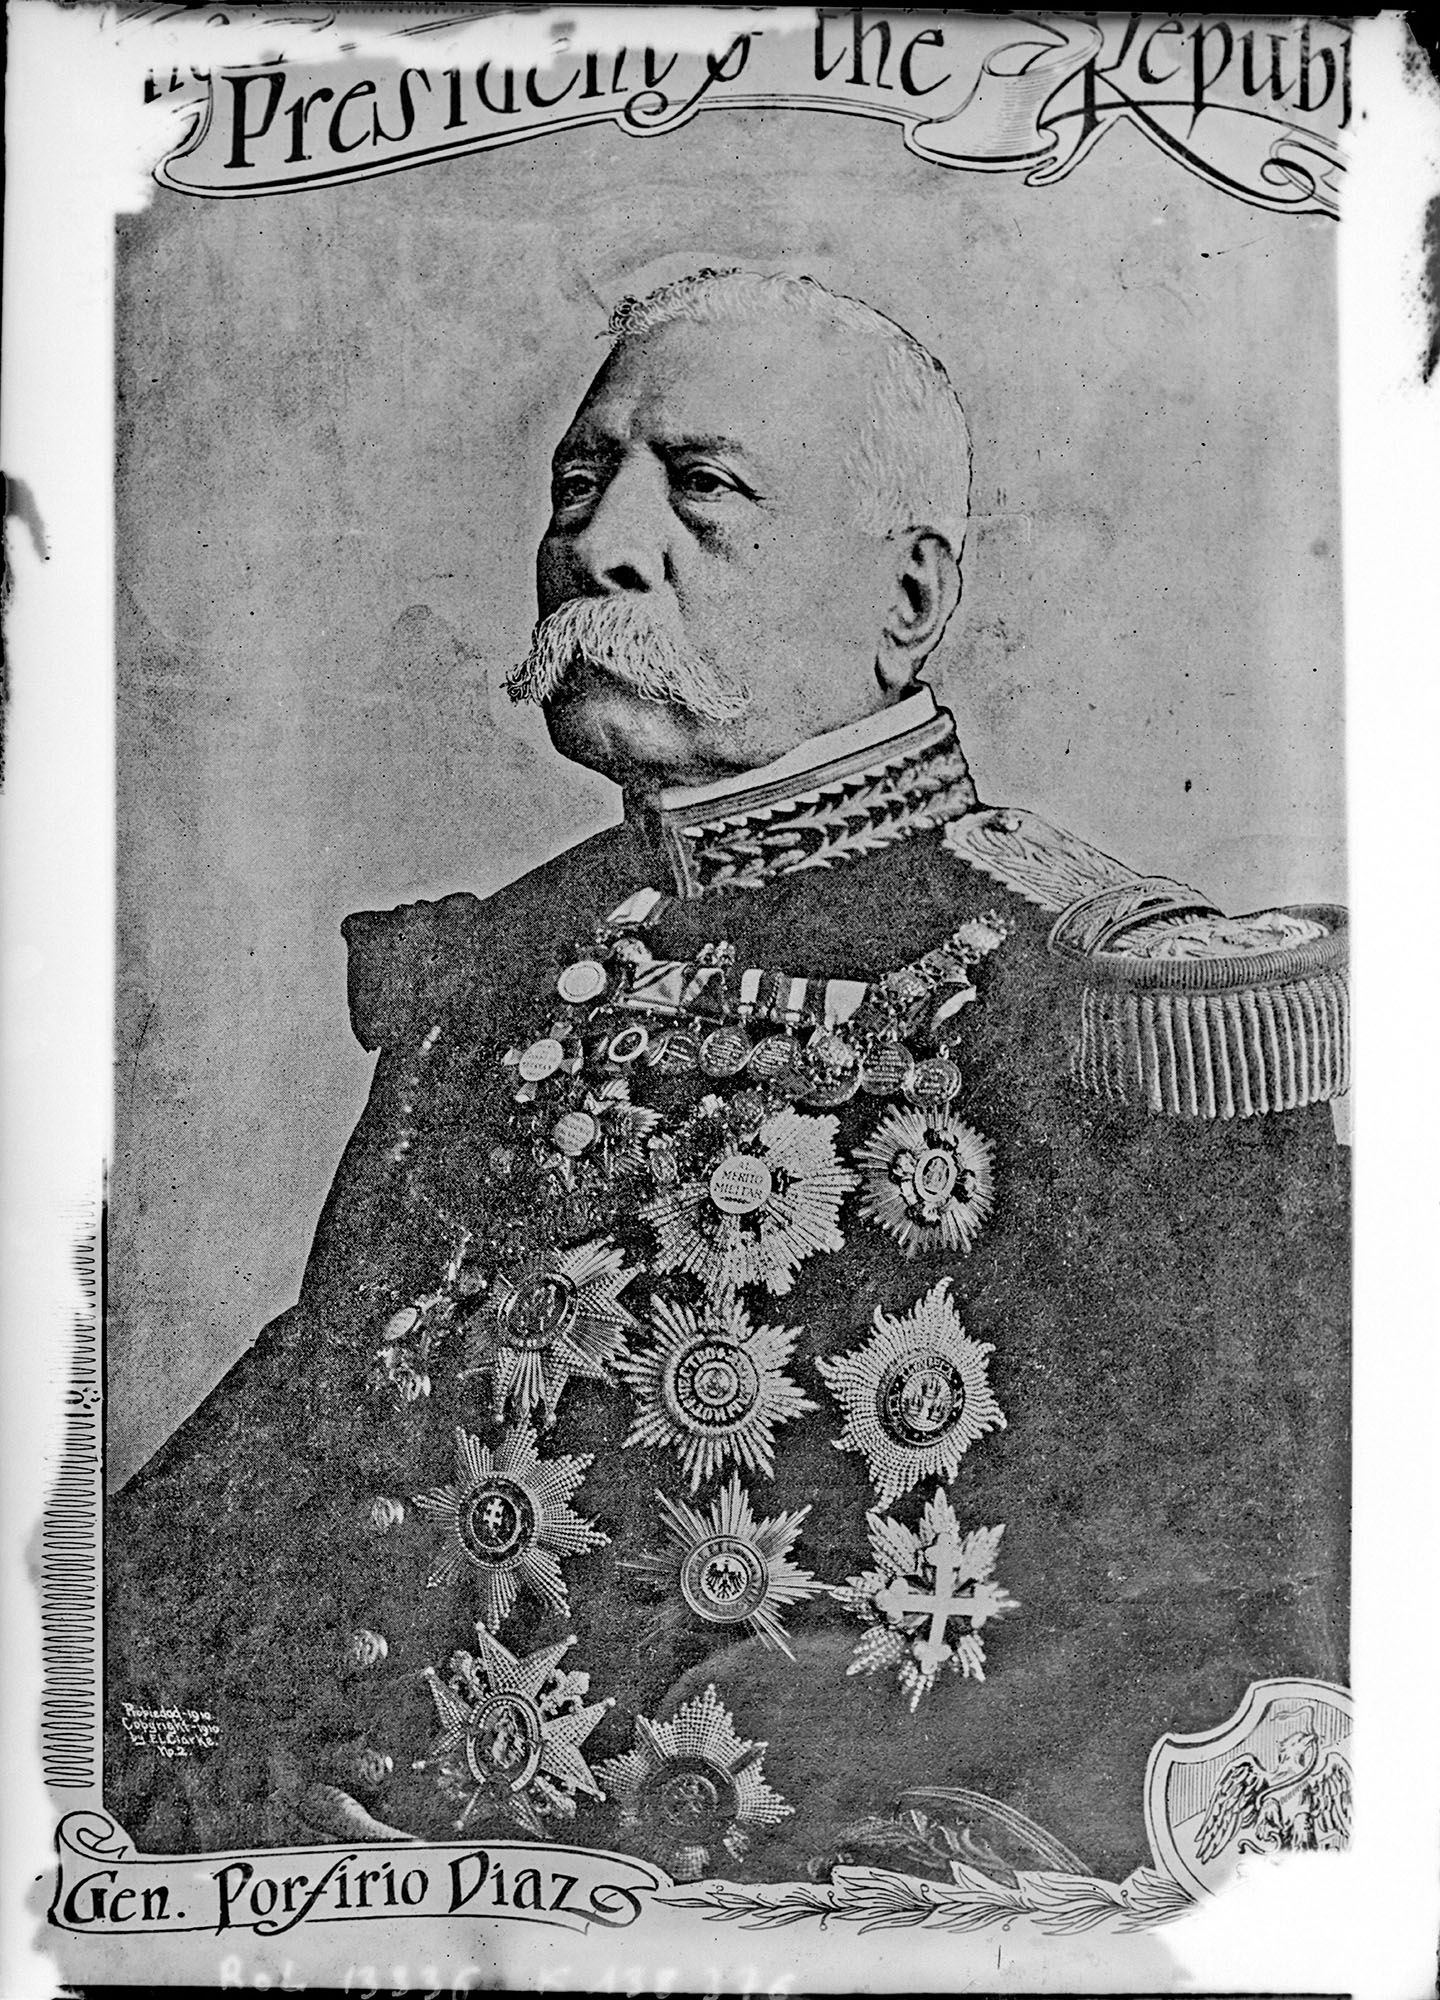 Xeneral Porfirio Díaz - Ex presidente de México (1911)